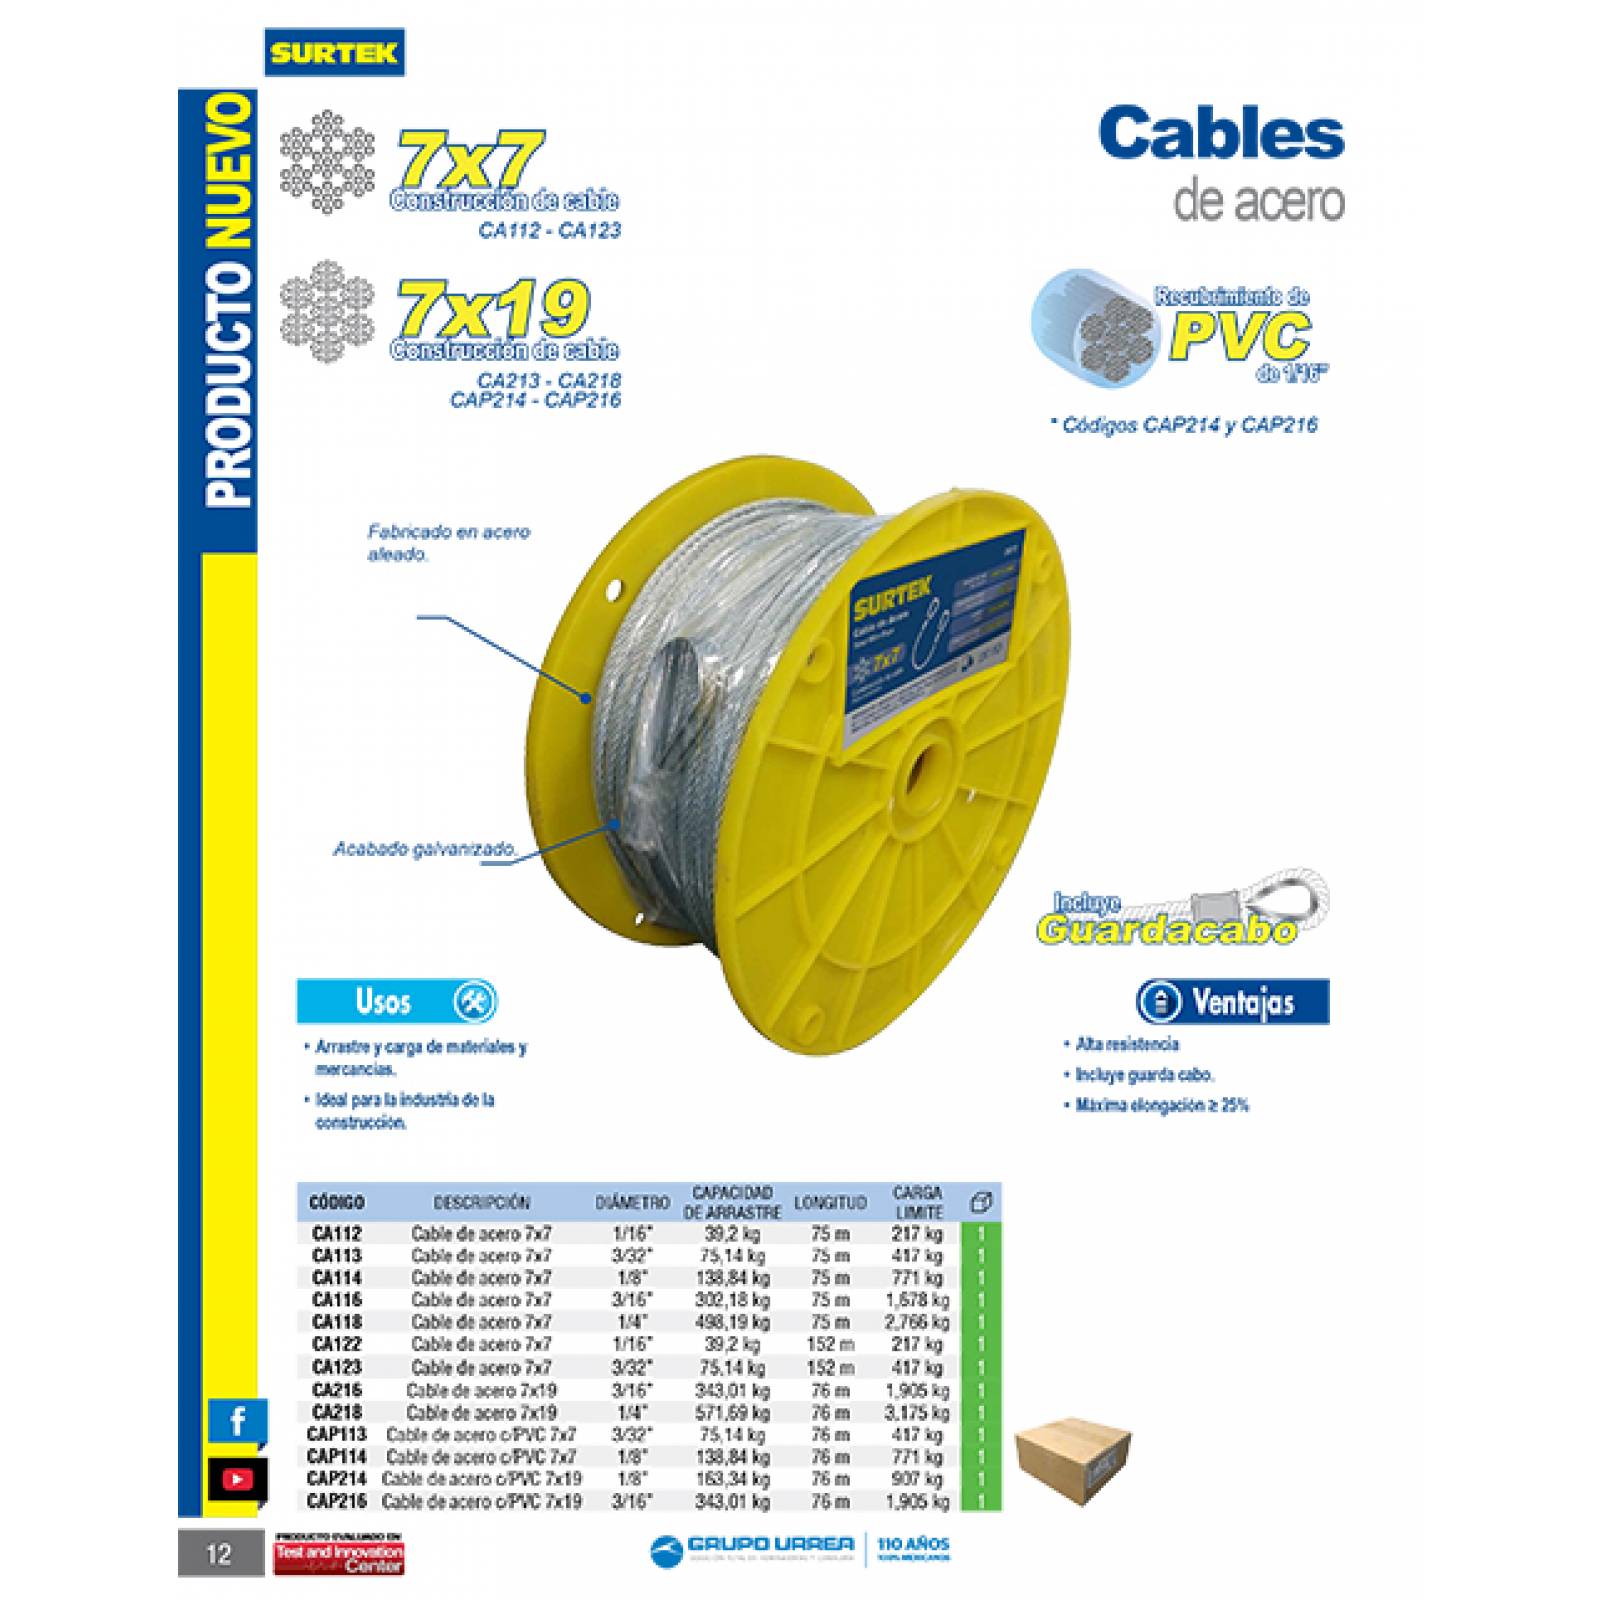 Cable Acero 7 X 19 1/4 X 76 Metros Ca218 Surtek 